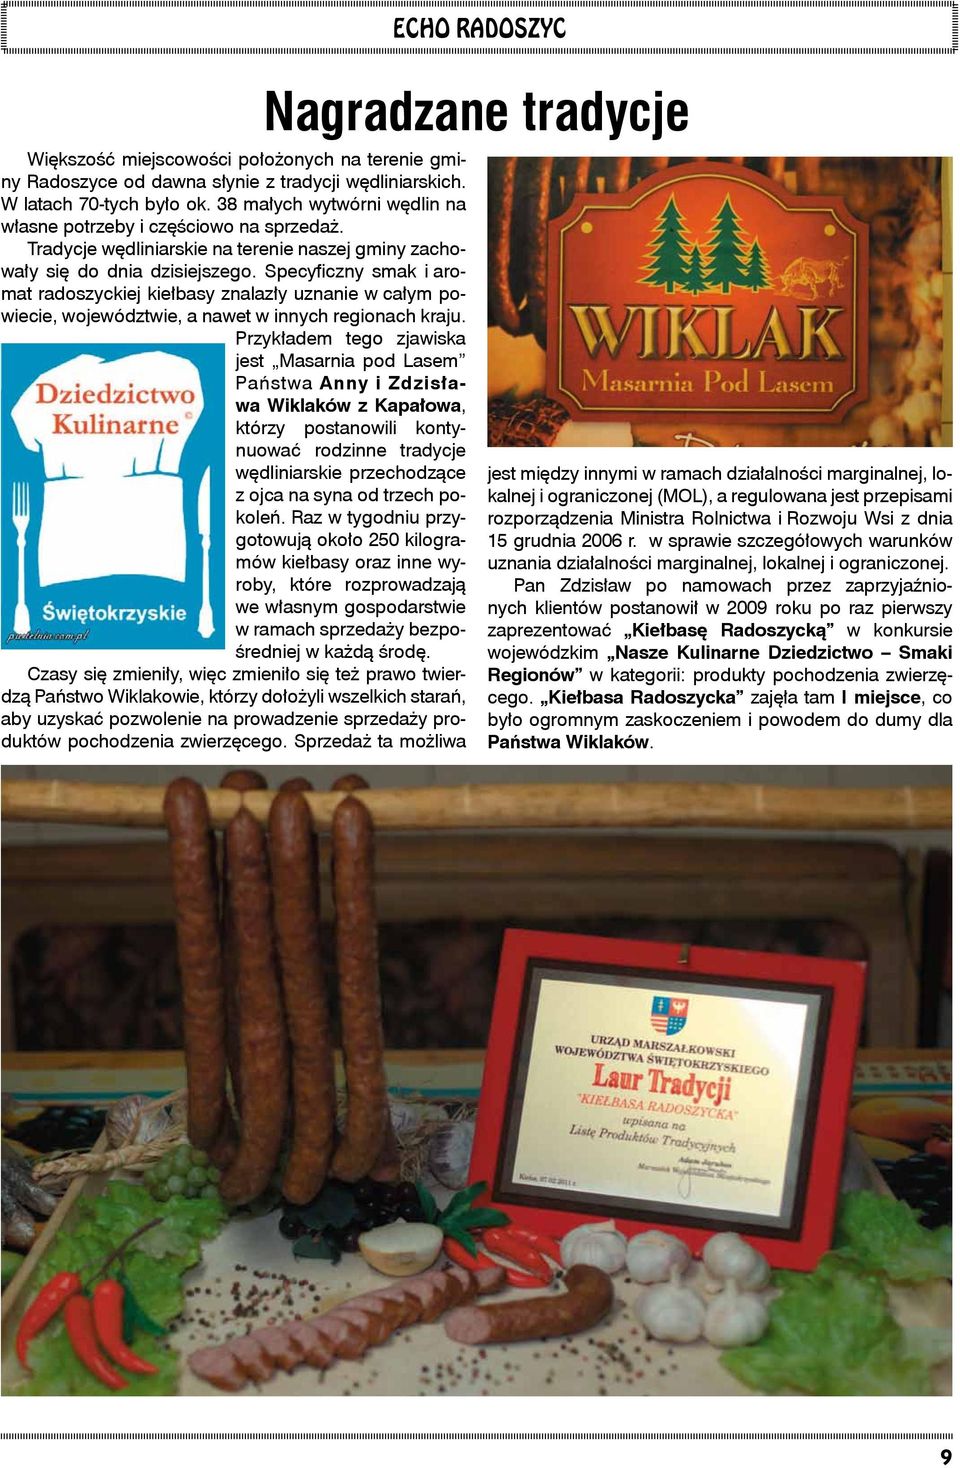 Specyficzny smak i aromat radoszyckiej kiełbasy znalazły uznanie w całym powiecie, województwie, a nawet w innych regionach kraju.